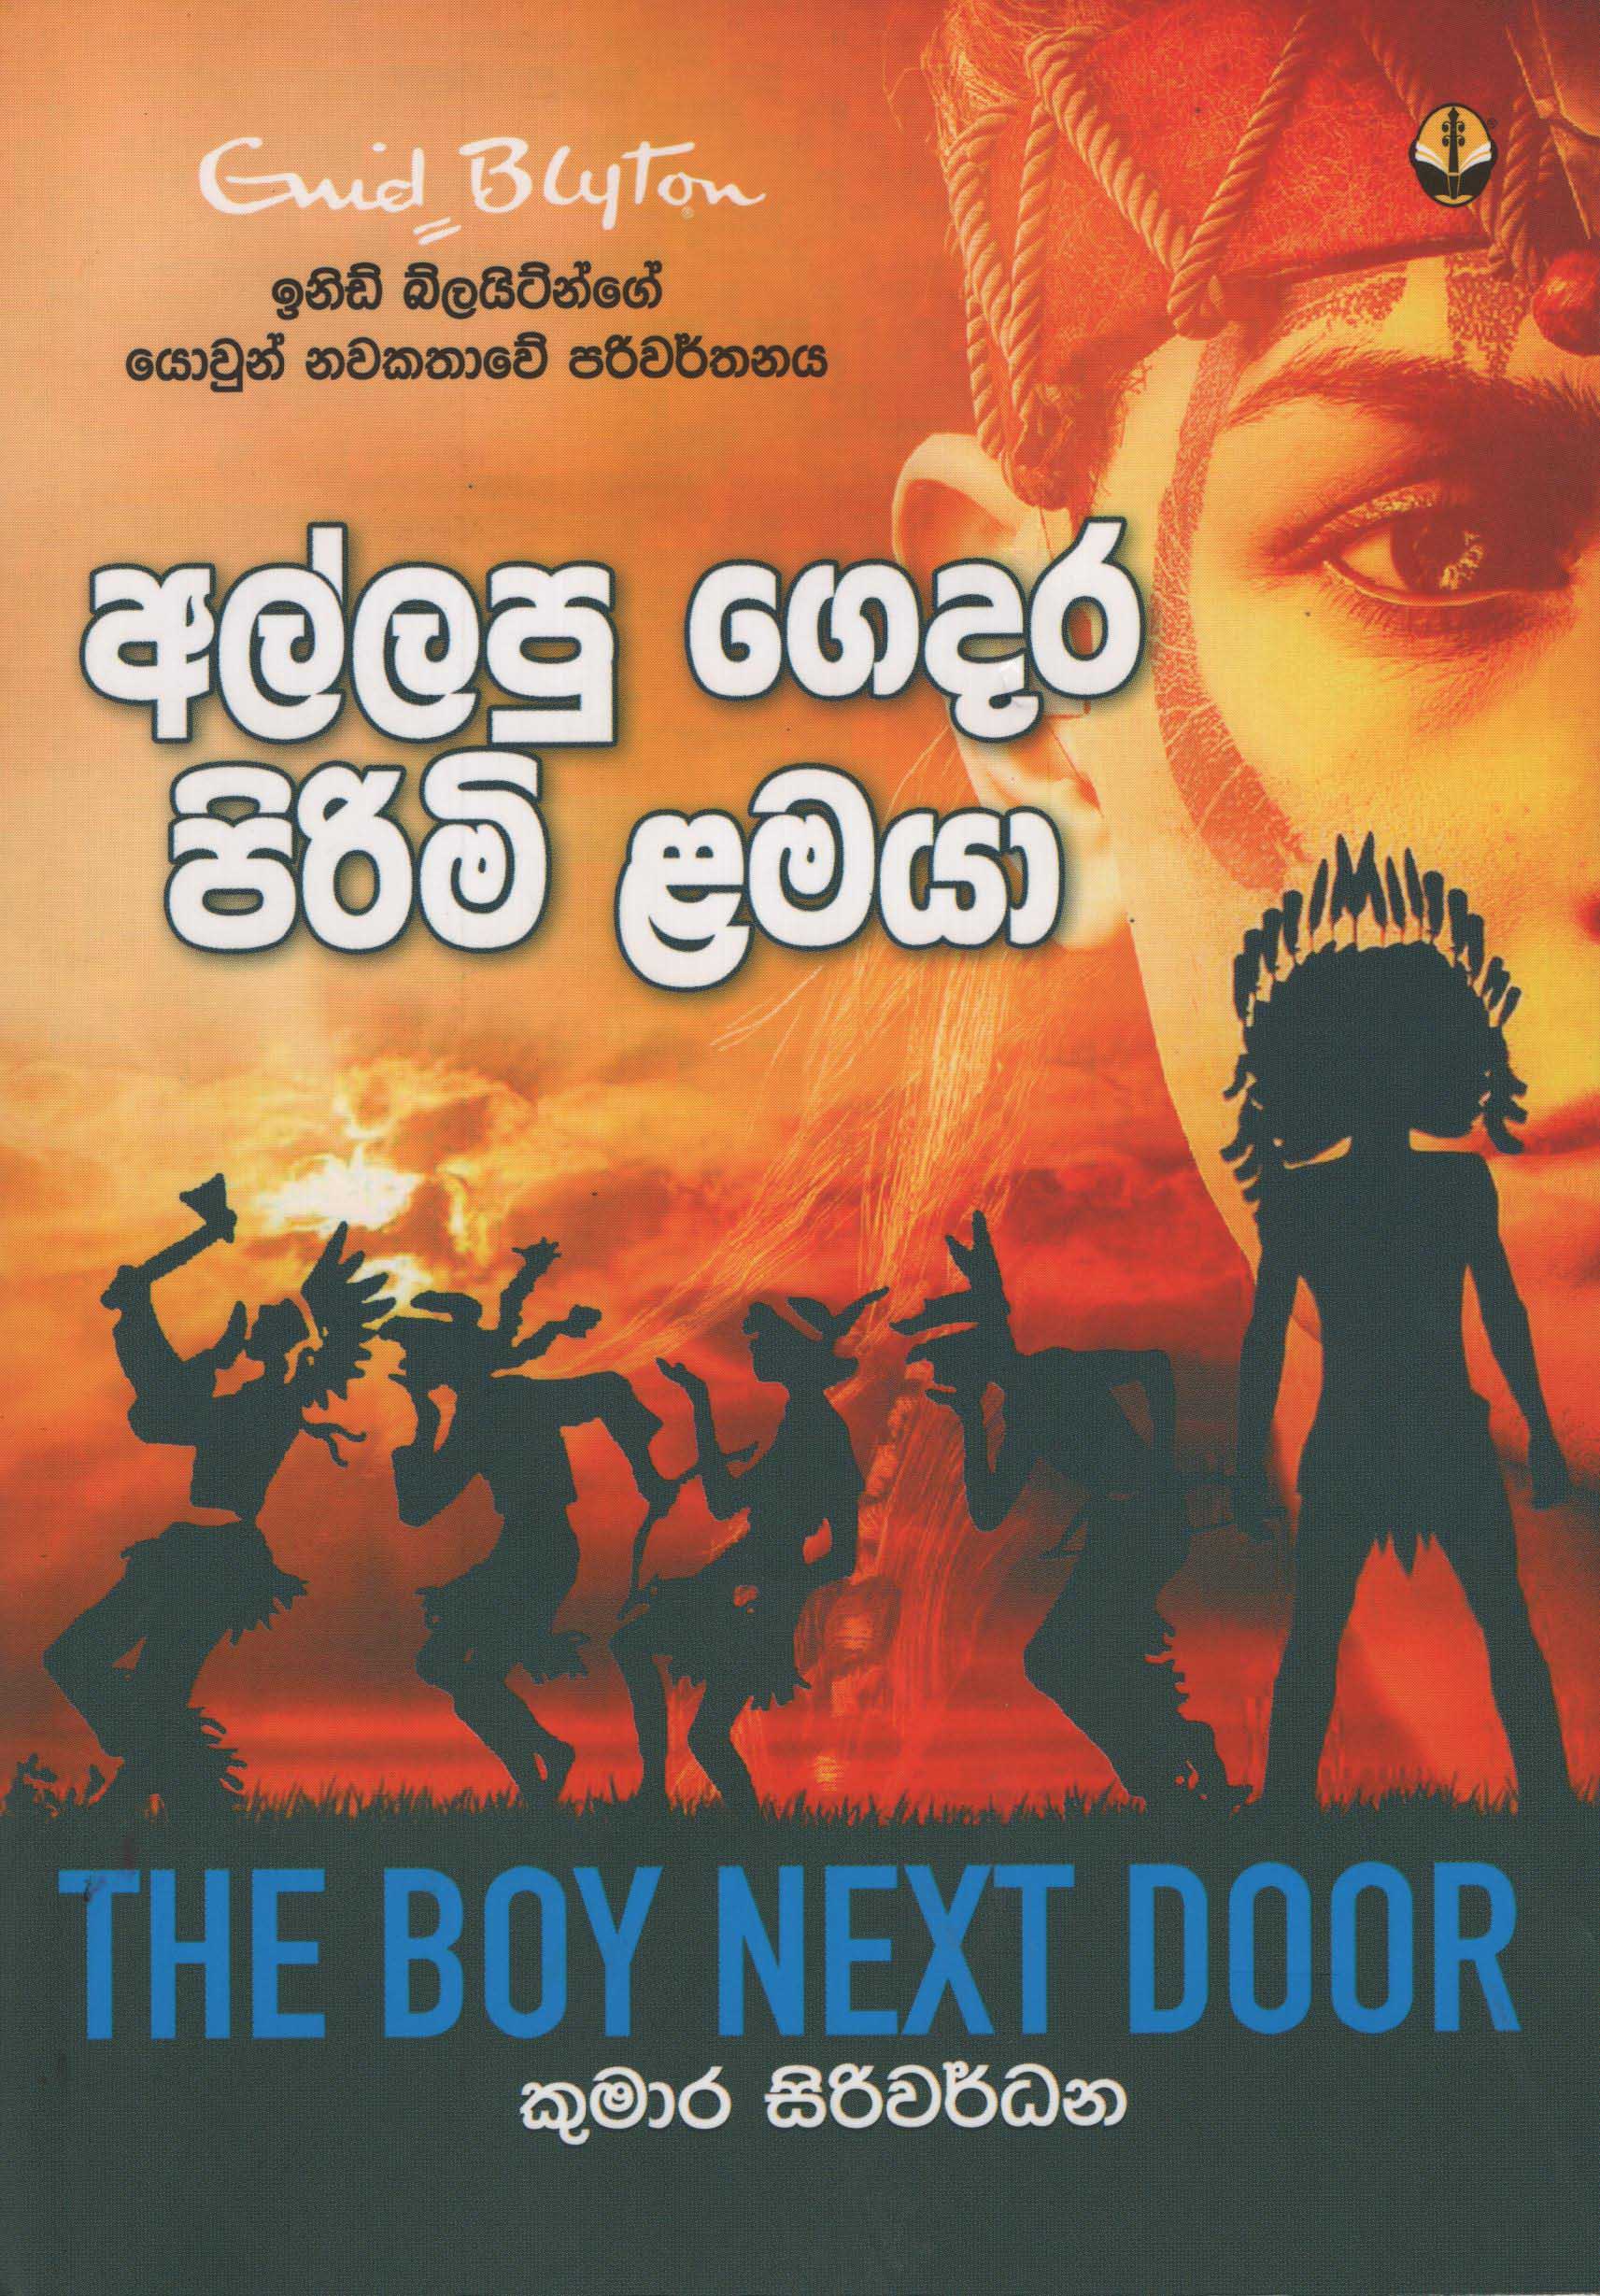 Allapu Gedara Pirimi Lamaya Translation of The Boy Next Door By Enid Blyton